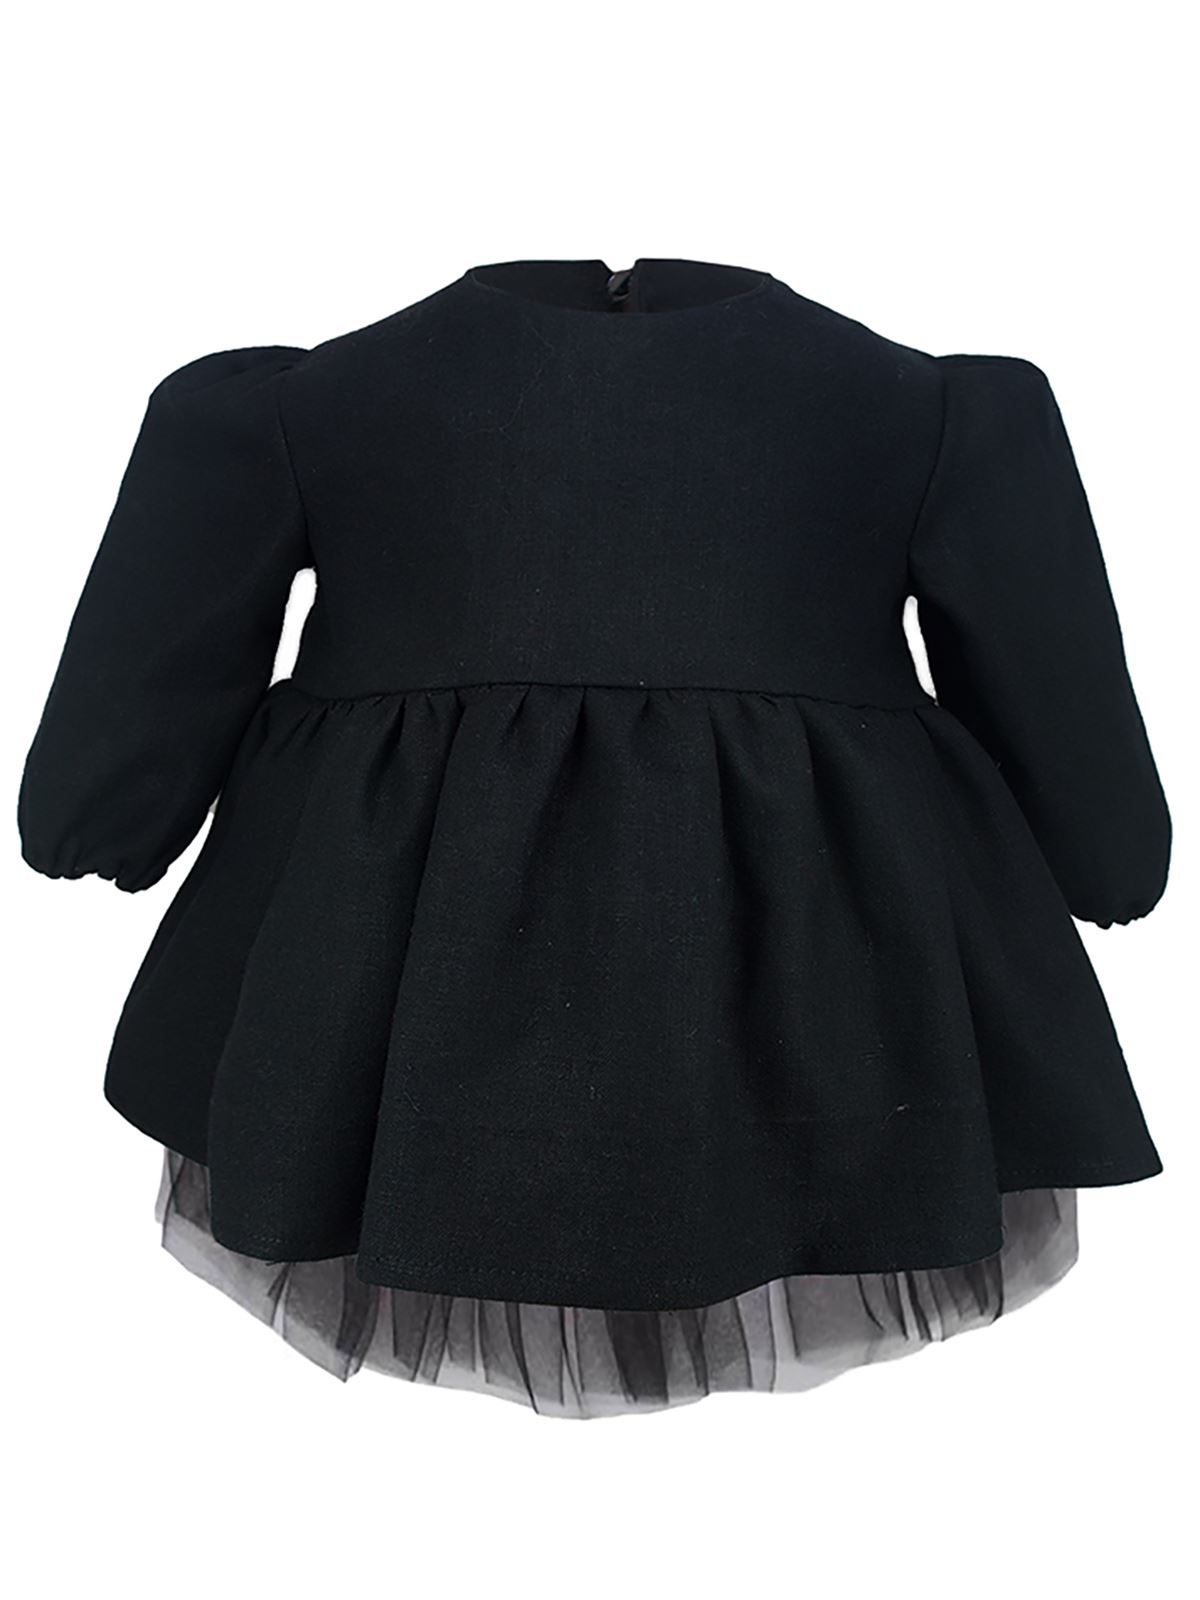 Shecco Babba Kız Çocuk Tütü Elbise Uzun Kollu 6-10 Yaş Siyah